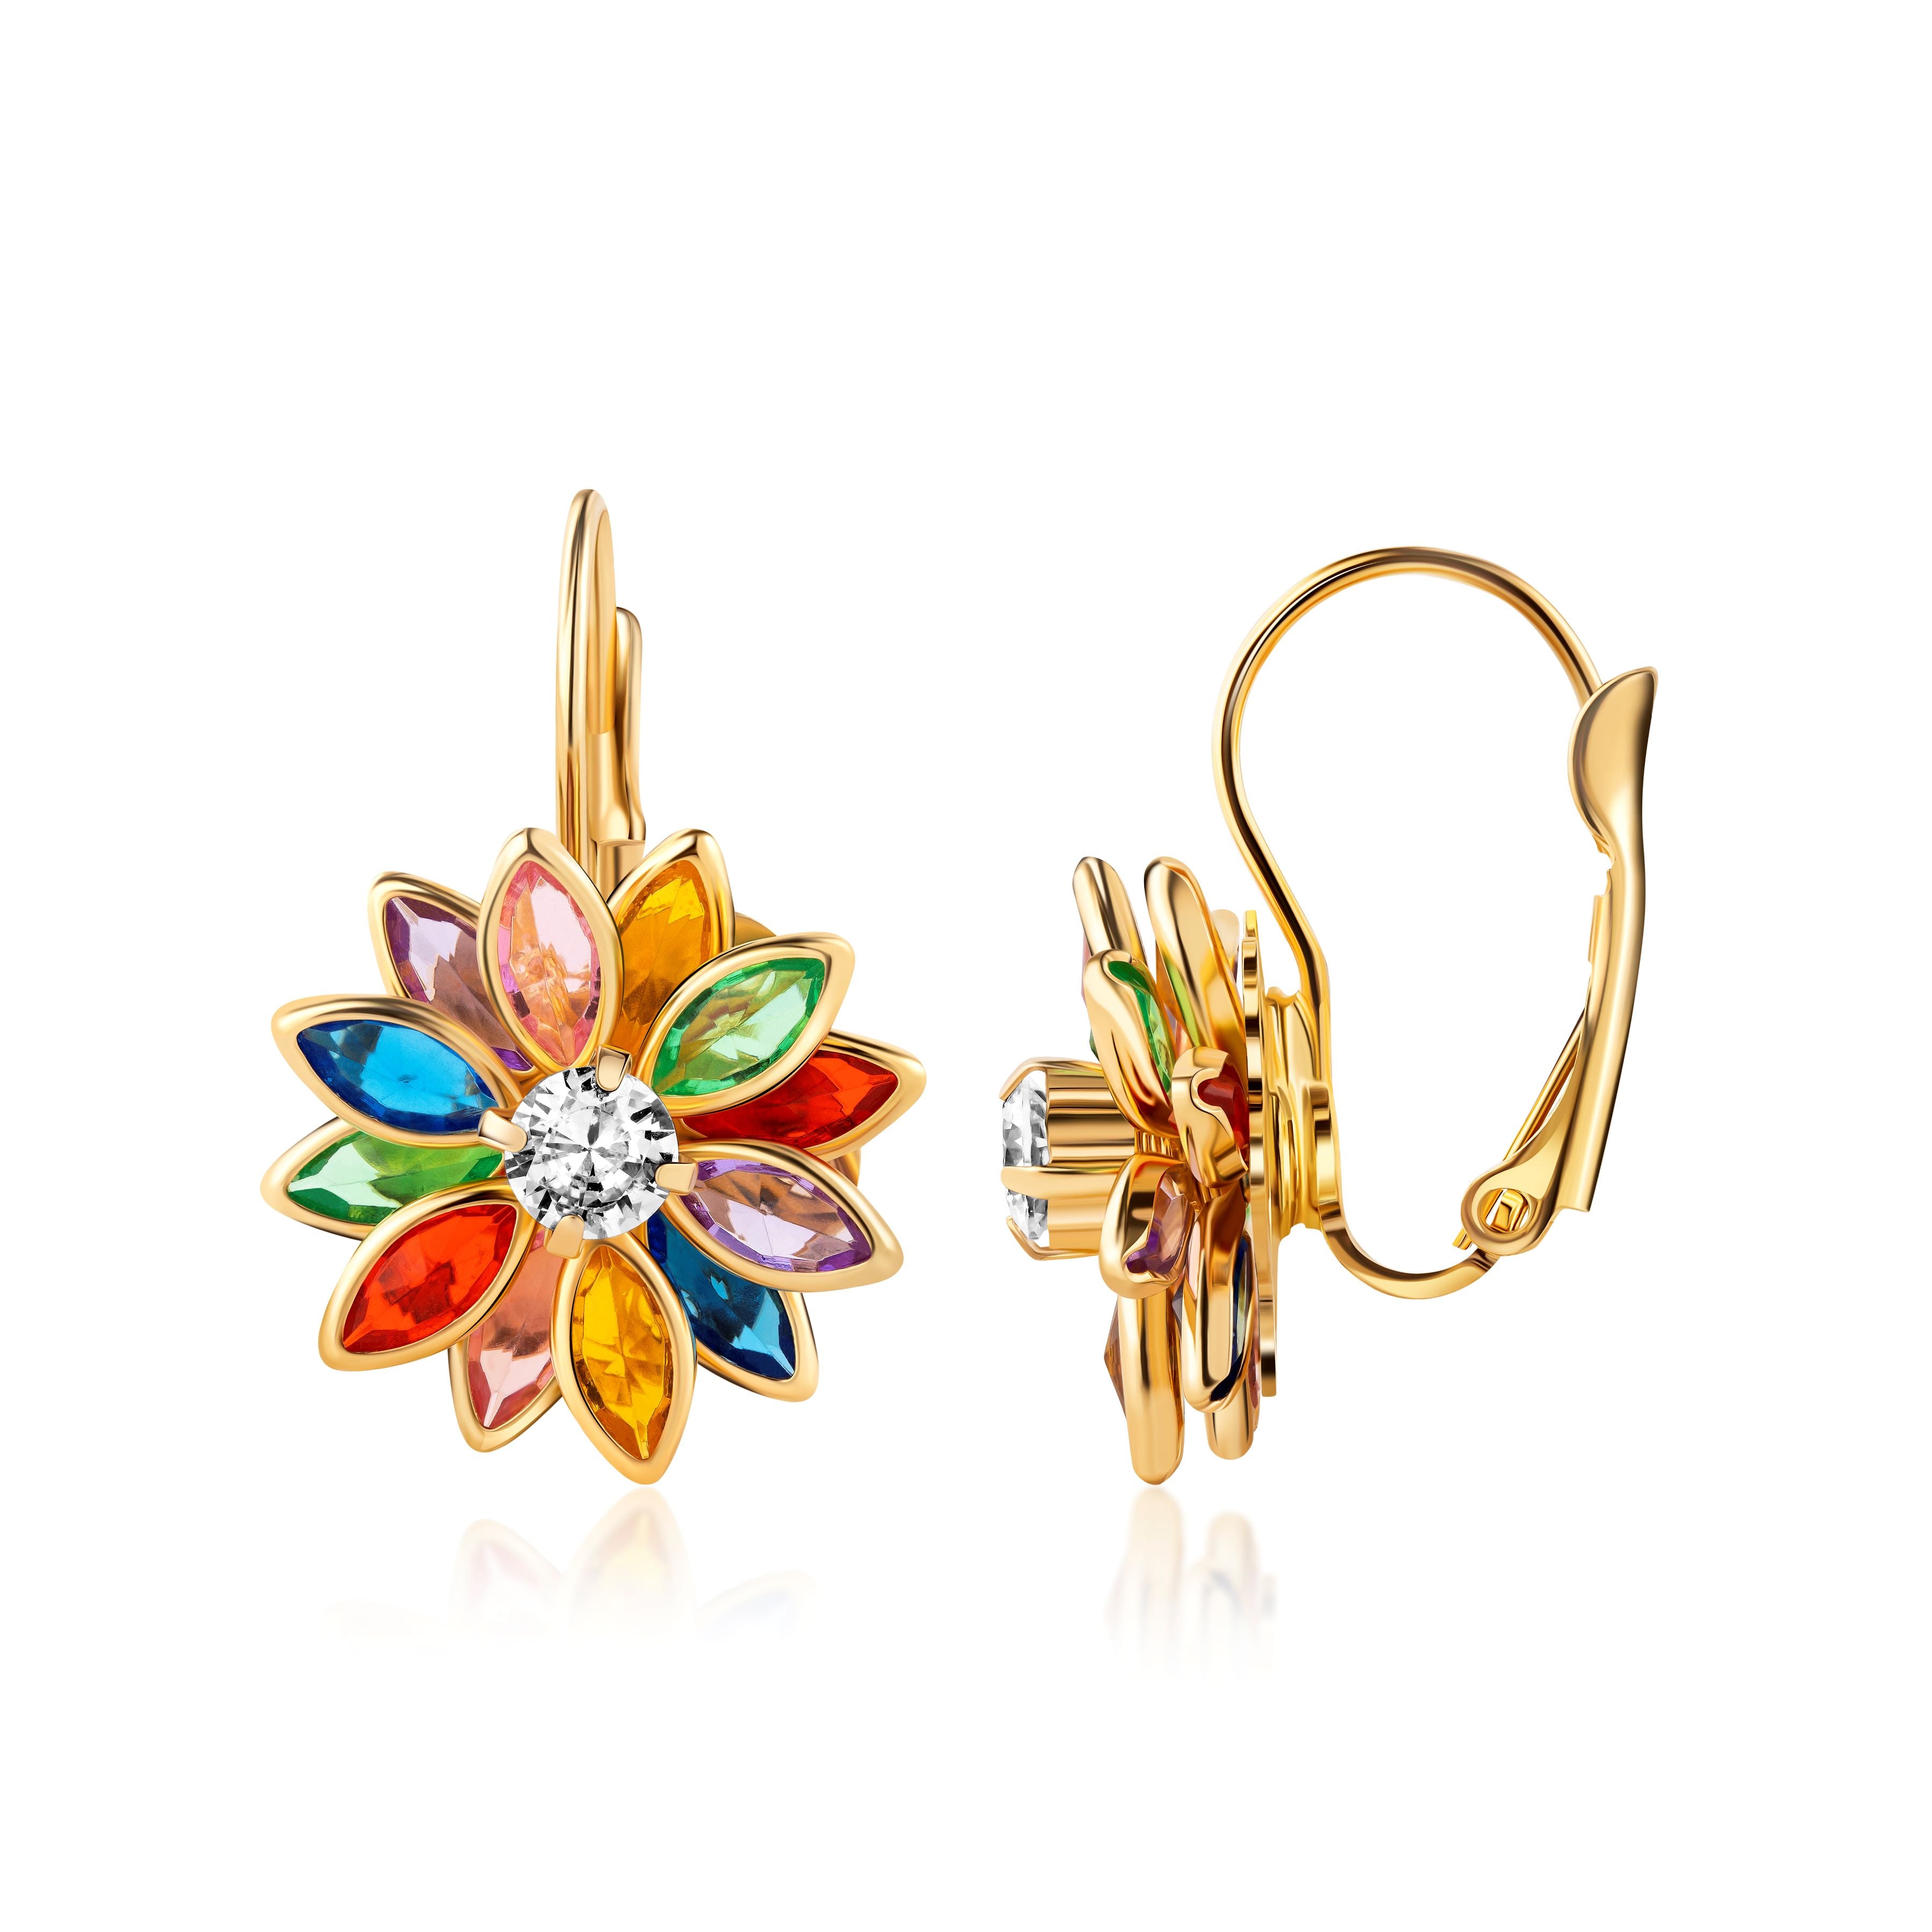 Barzel 18K Gold Plated Flower Earrings - Colorful Lotus Flower Earrings For Women